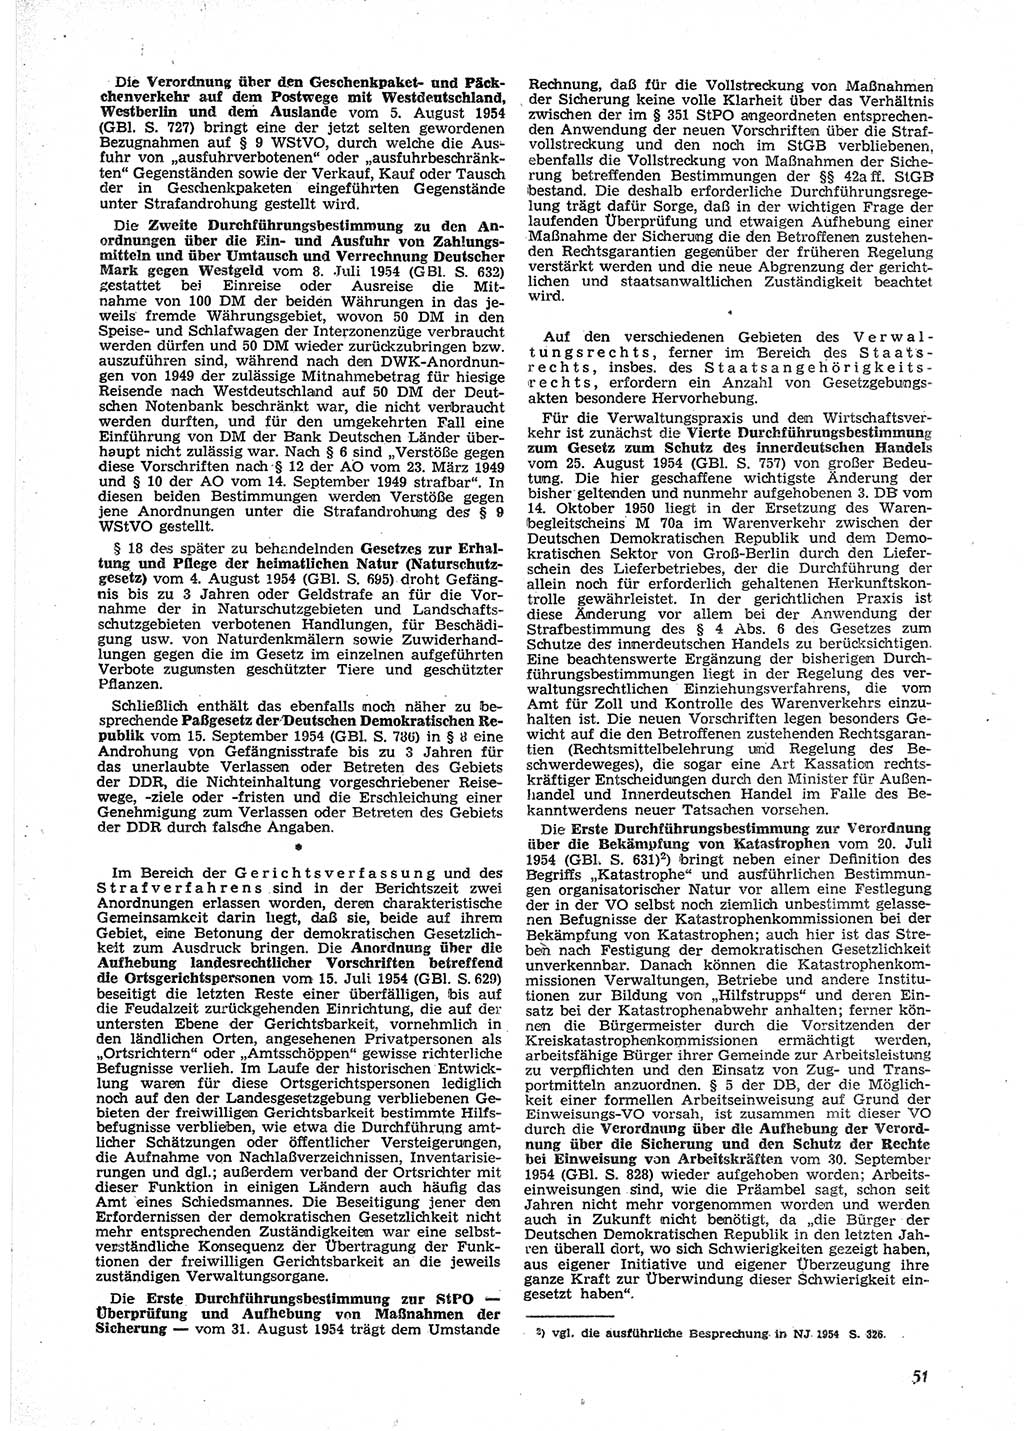 Neue Justiz (NJ), Zeitschrift für Recht und Rechtswissenschaft [Deutsche Demokratische Republik (DDR)], 9. Jahrgang 1955, Seite 51 (NJ DDR 1955, S. 51)